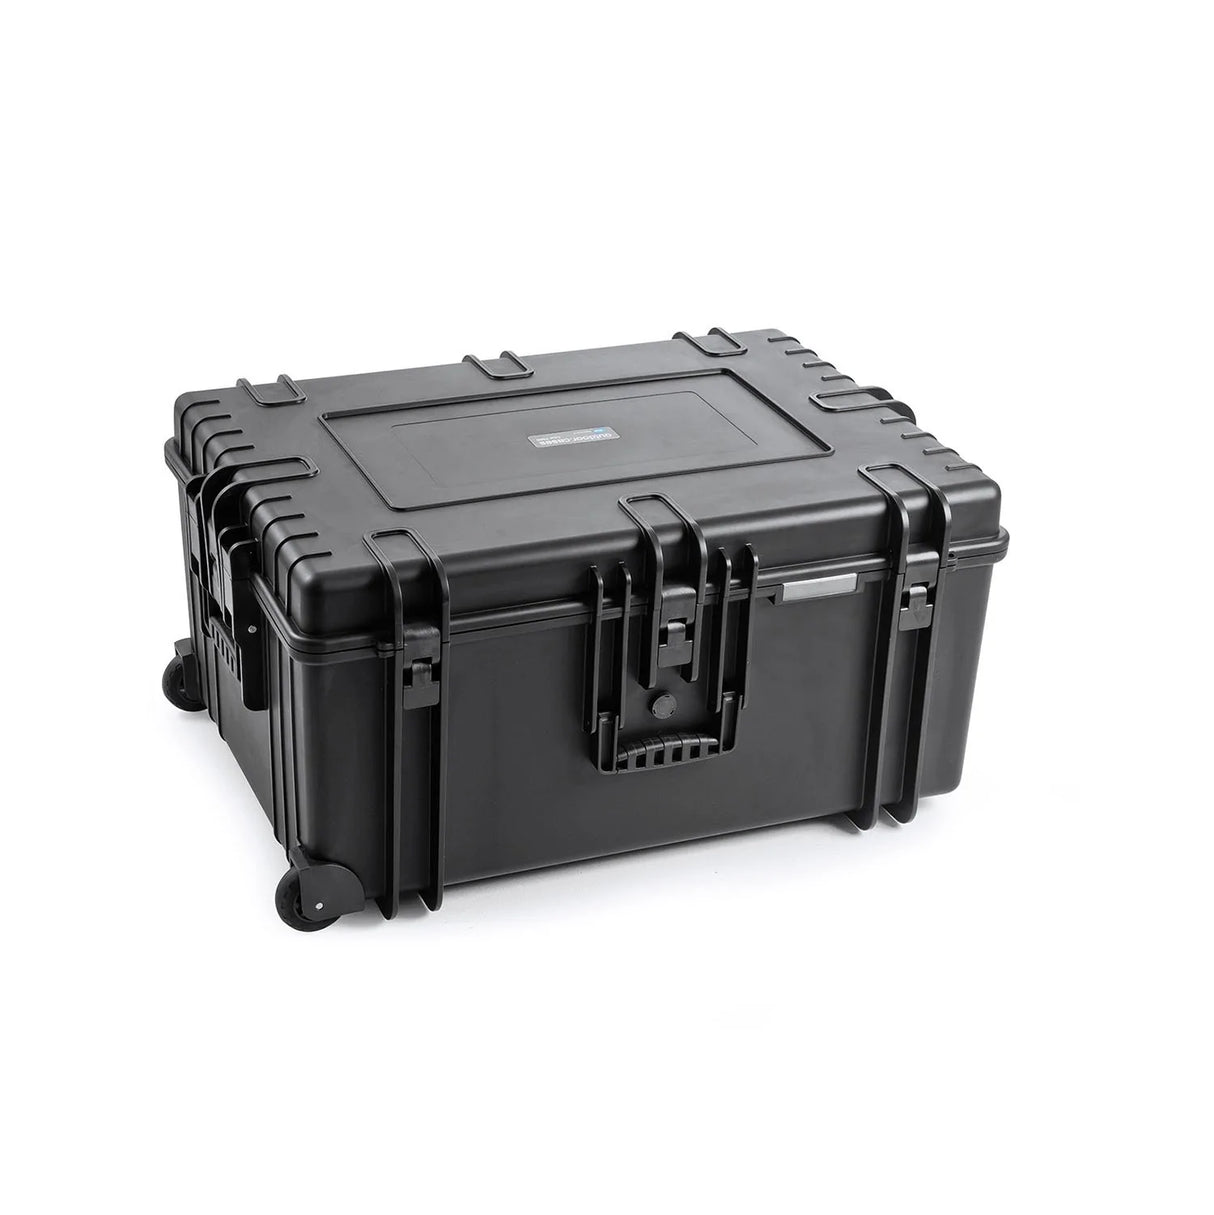 B&W Waterproof Case - Type 7800 Black Outdoor Case (No Foam)